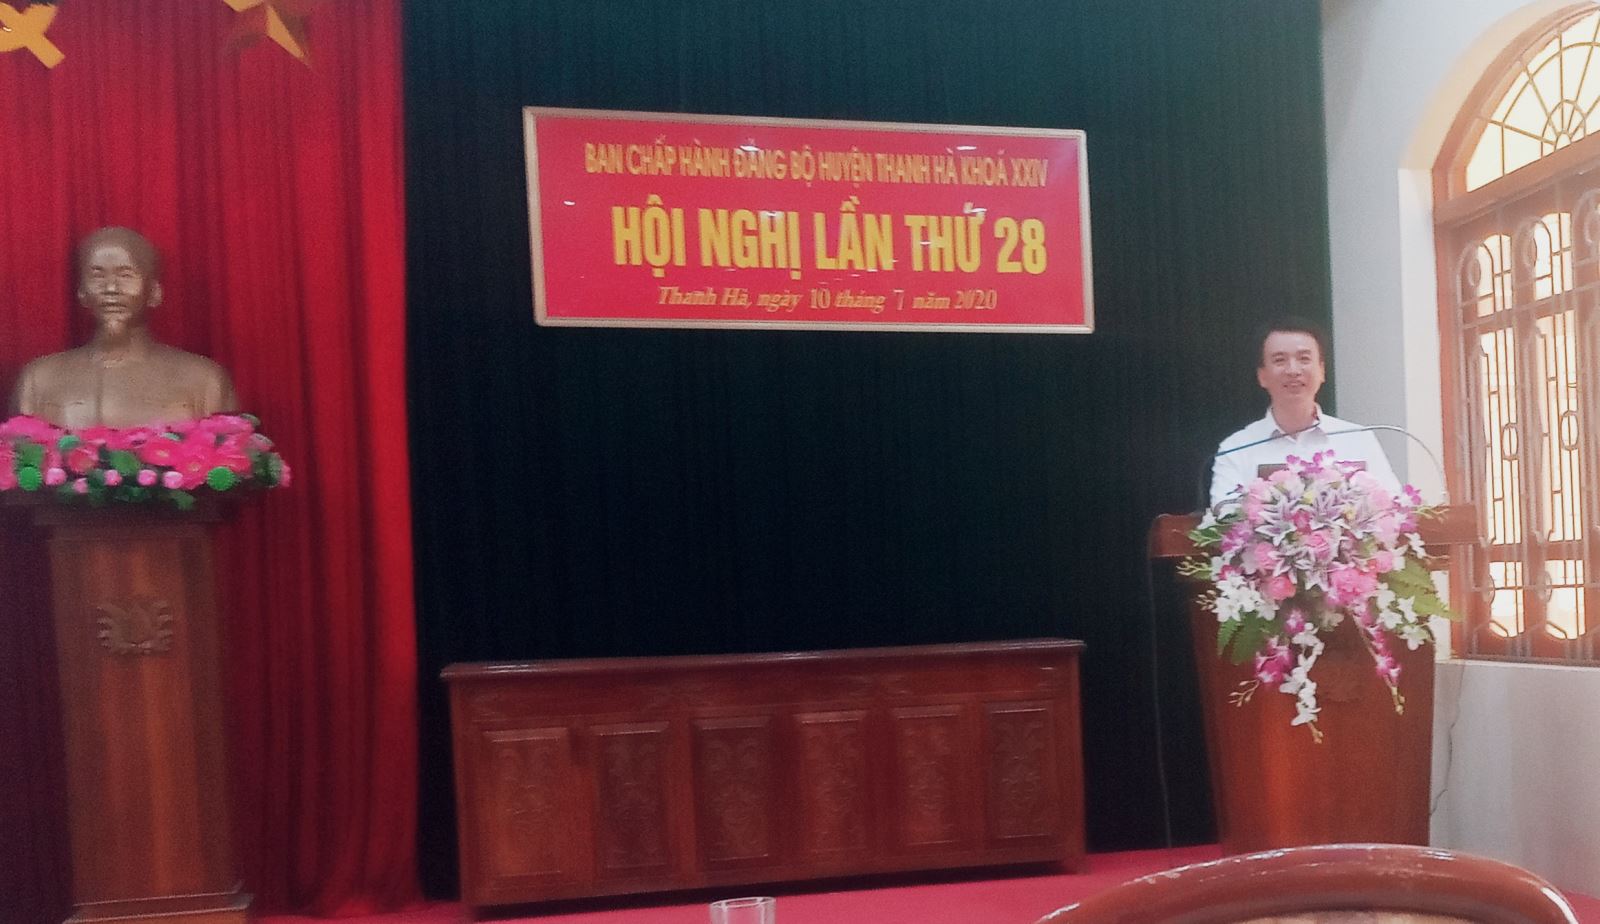 Đồng chí Nguyễn Đức Tuấn kết luận hội nghị